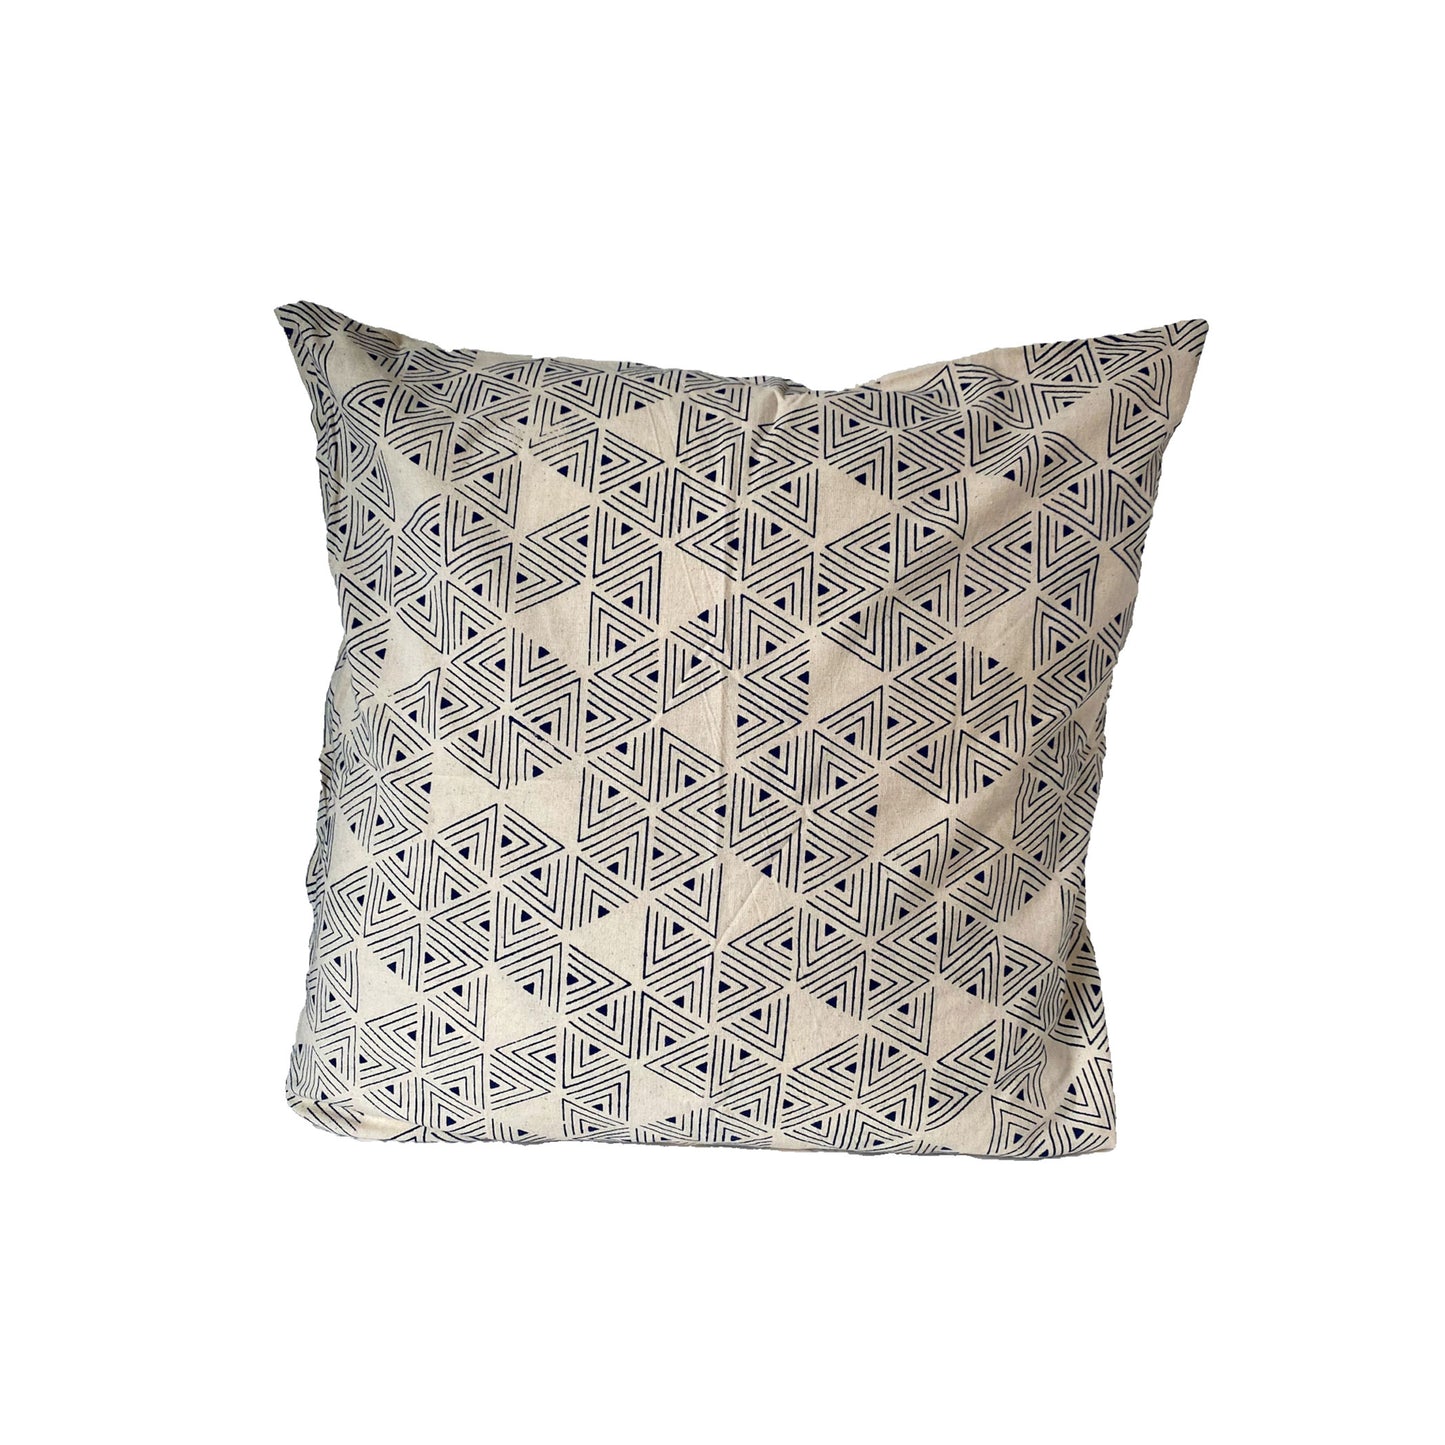 stella decor cushion cover in design sea serpent in color navy blue white original